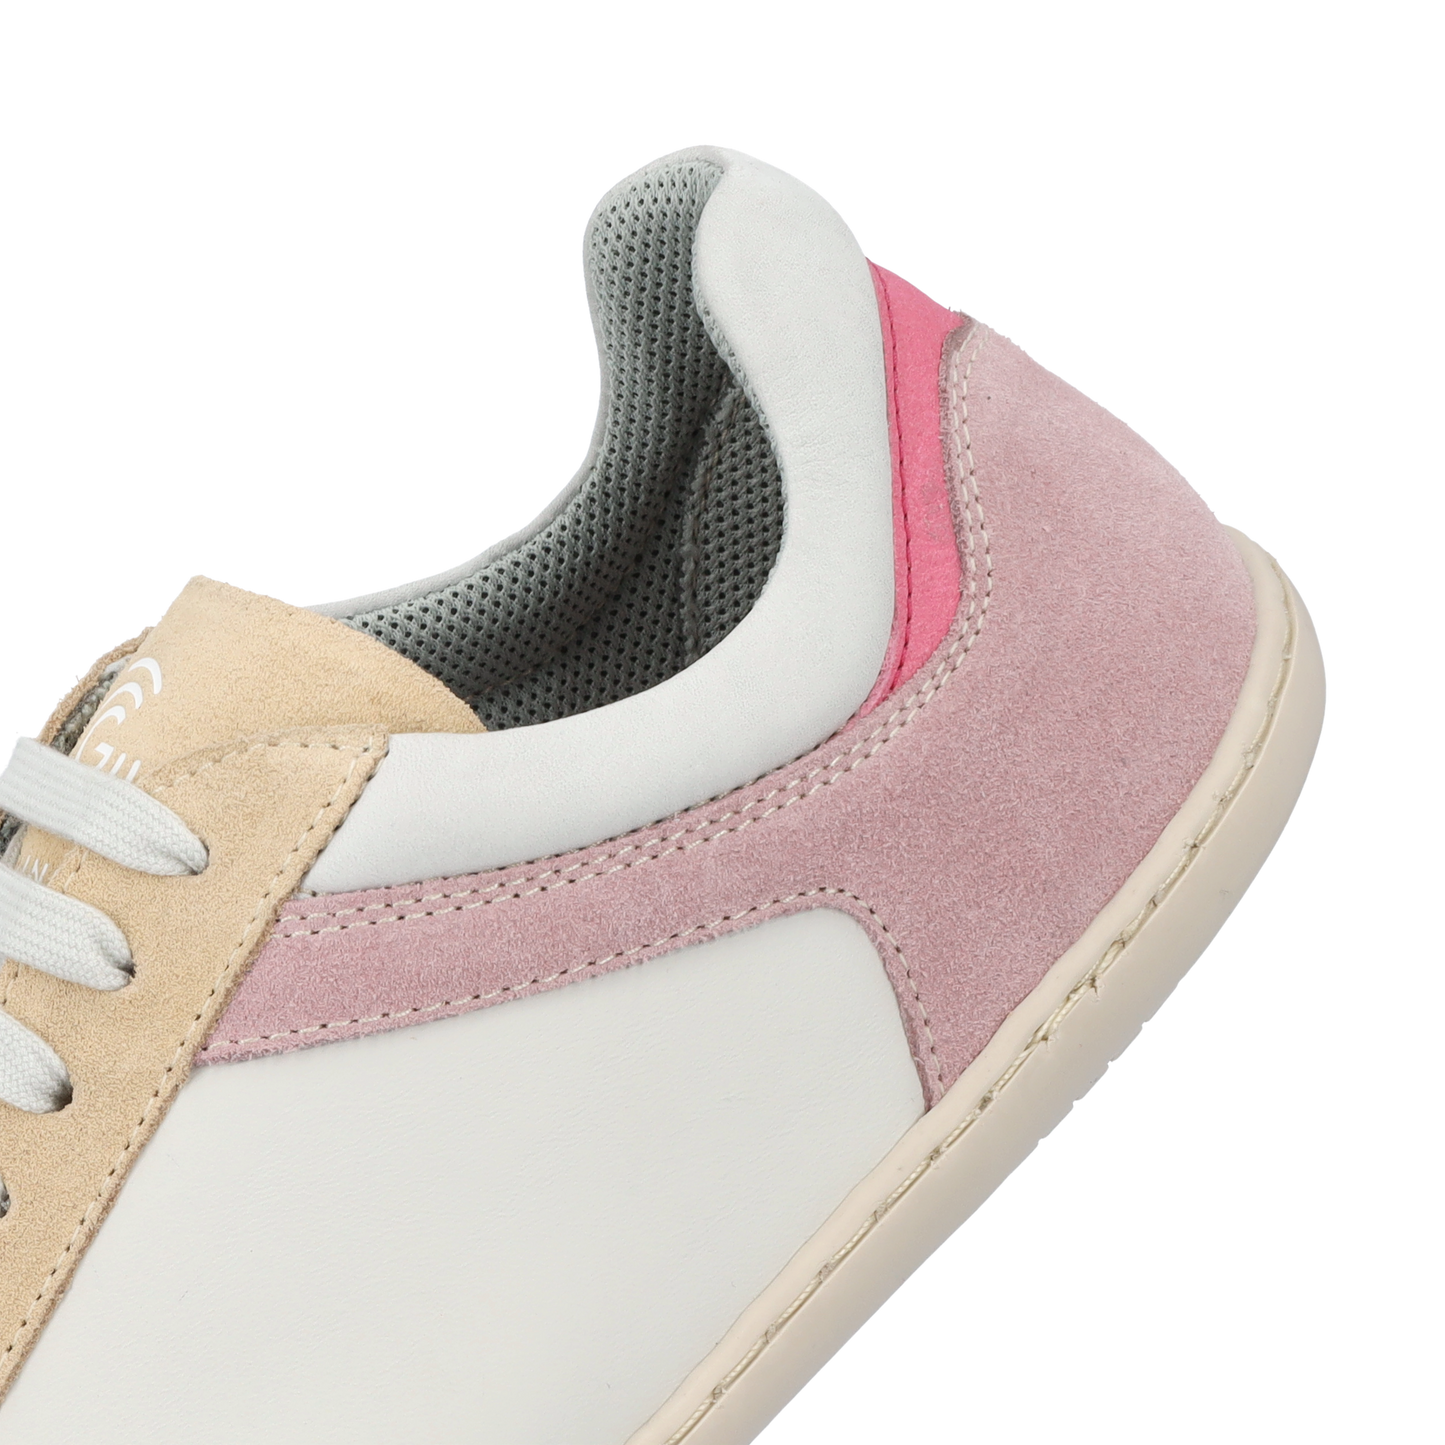 Groundies Orlando Women barfods sneakers til kvinder i farven off-white / beige / pink, detalje